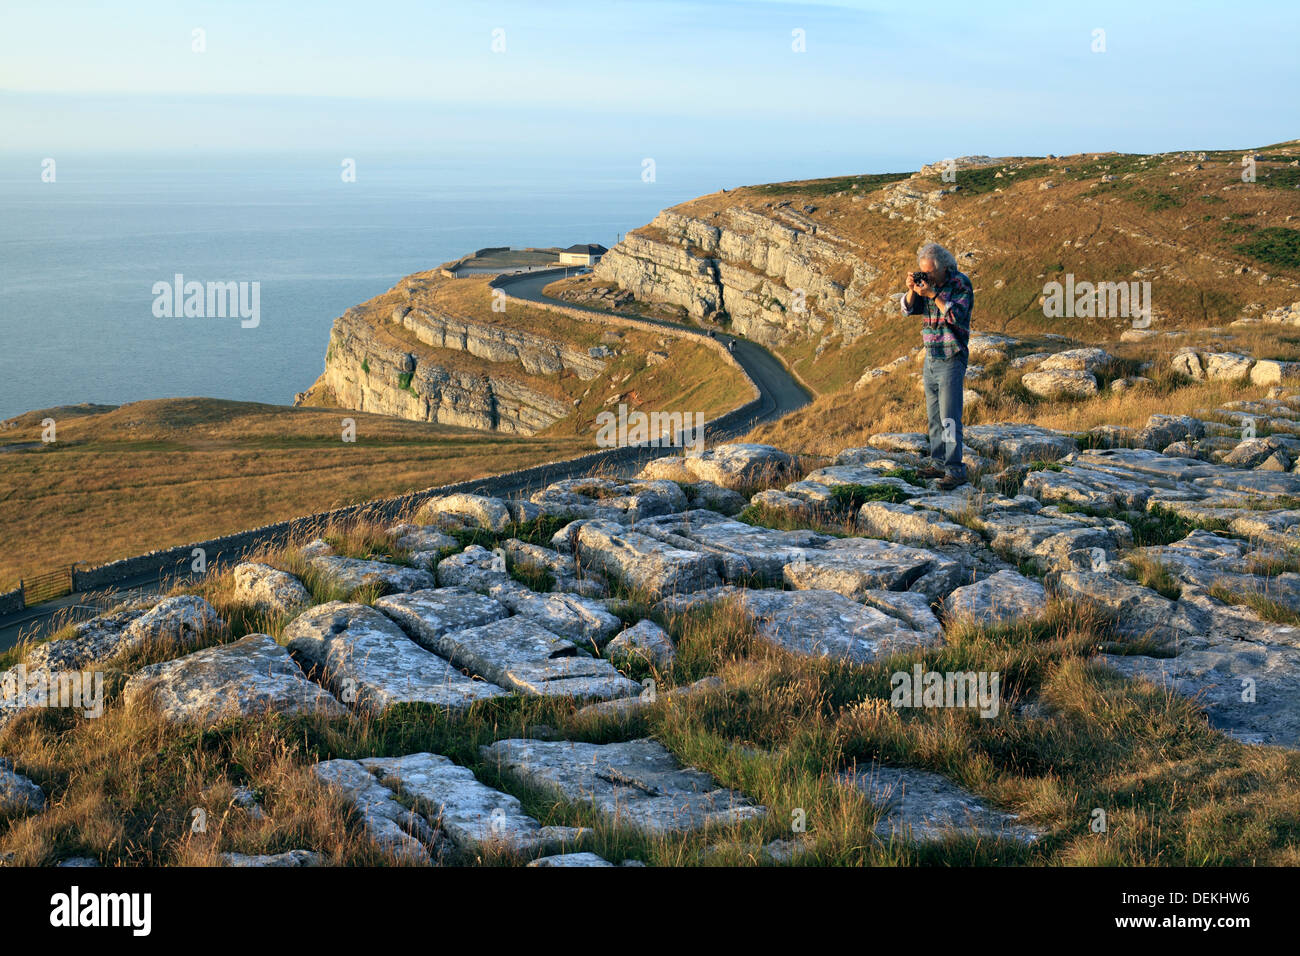 Paysage calcaire : un lapiez sur le Great Orme pointe, Llandudno, au nord du Pays de Galles. Falaises calcaires en arrière-plan. Banque D'Images